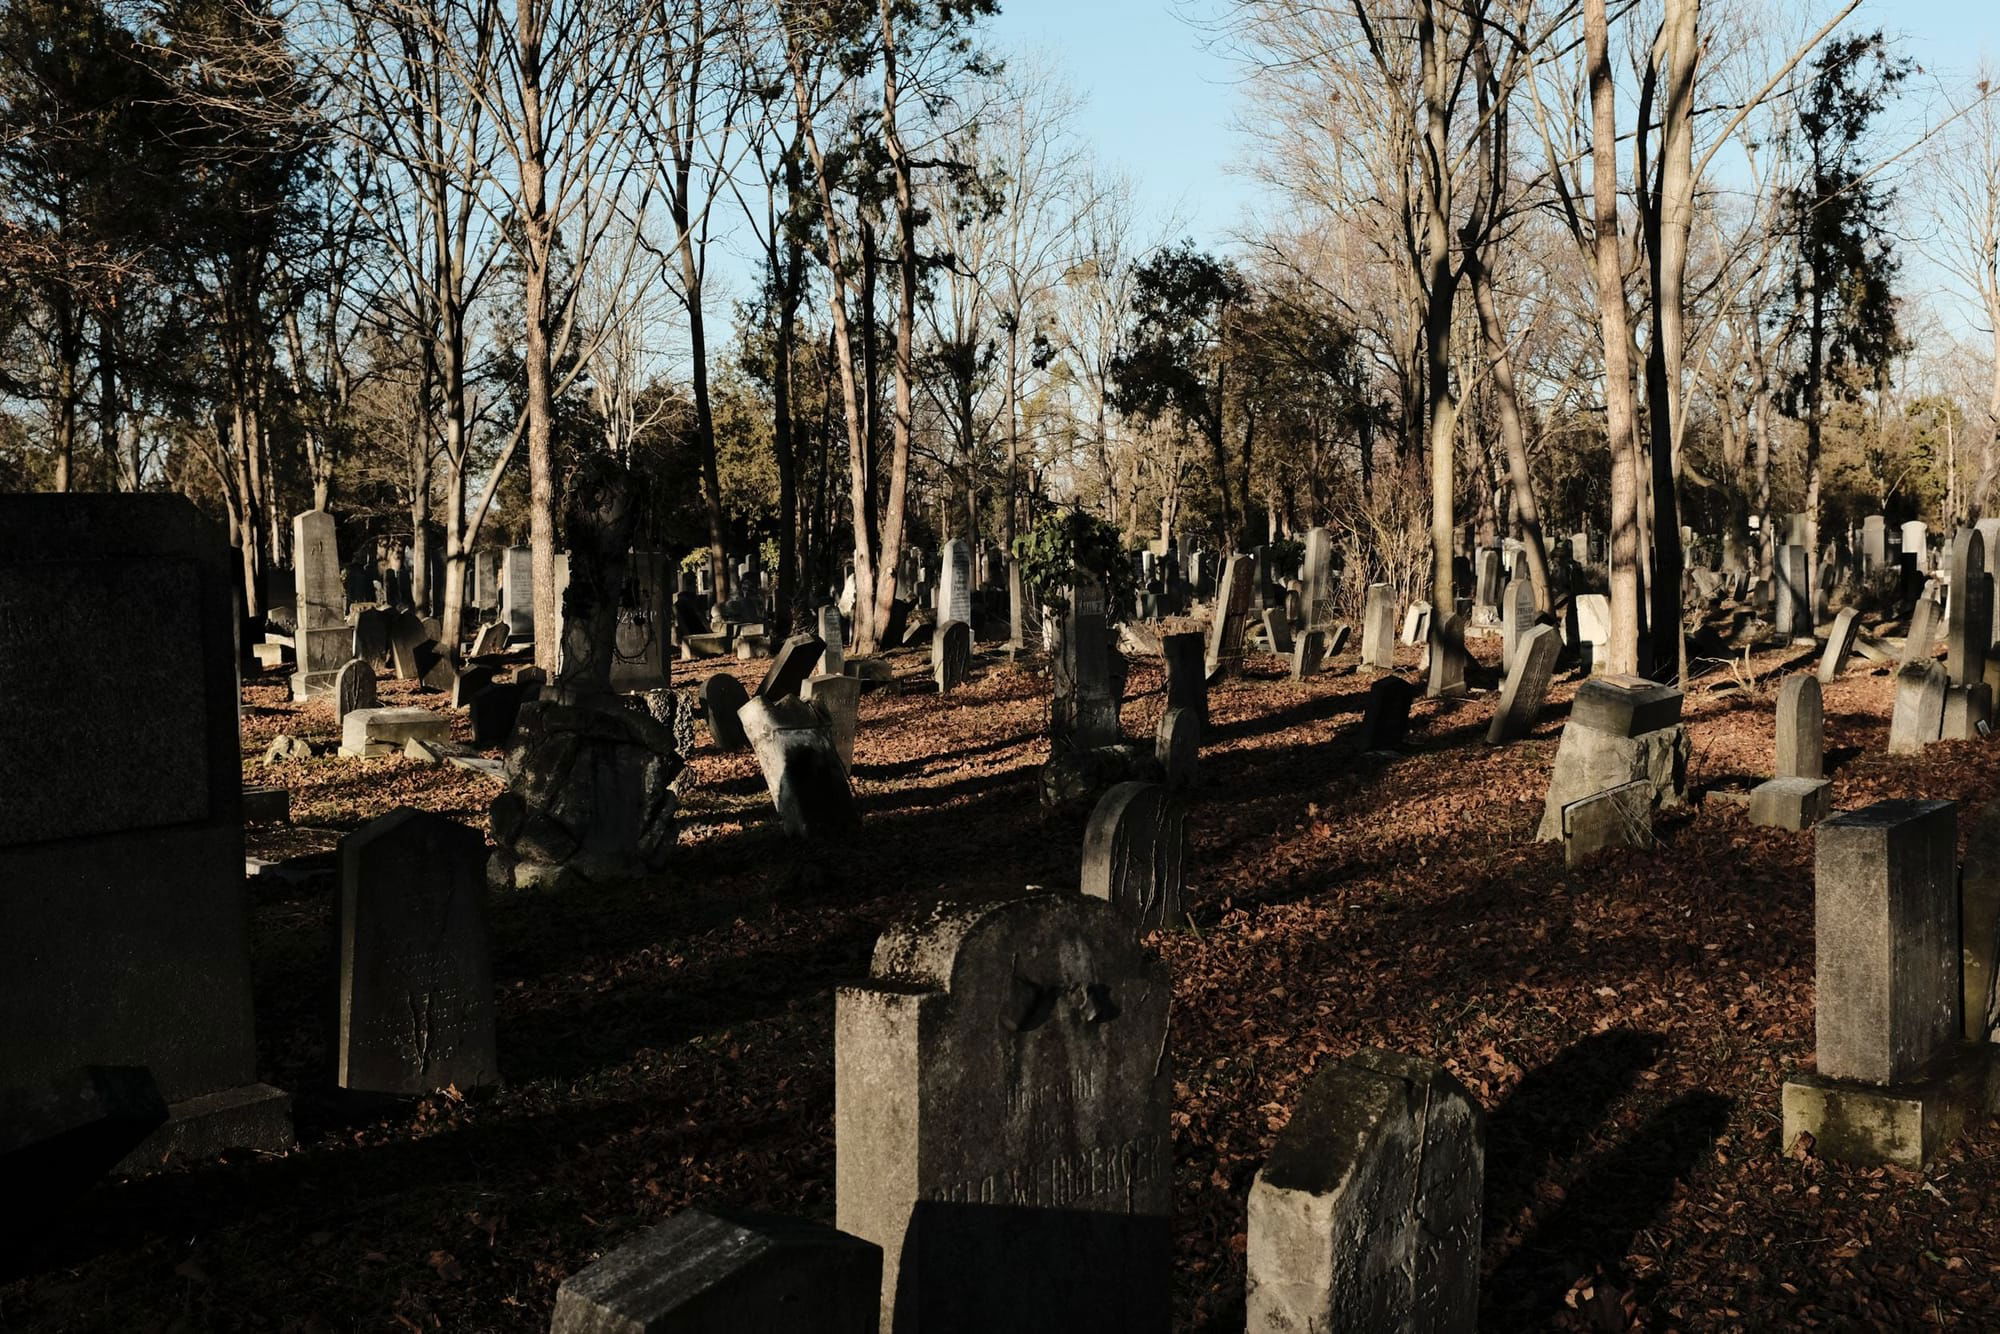 Gestion et entretien du cimetière dans les petites communes rurales
QUESTION ÉCRITE

Question écrite n°01733 - 16e législature